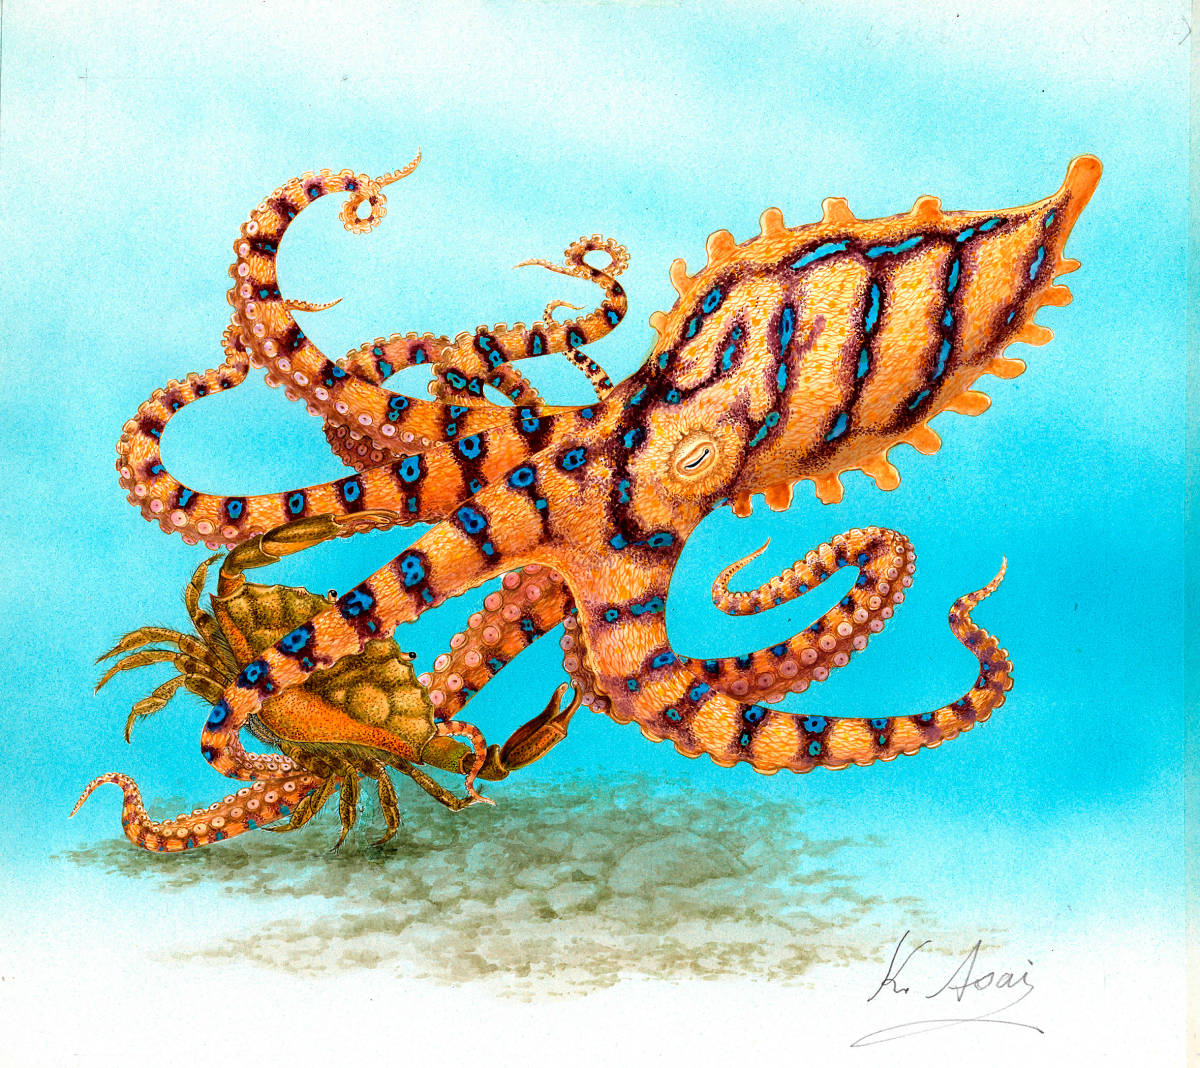 生物水彩微型画 蓝环章鱼攻击贻贝 真实, 绘画, 水彩, 动物画